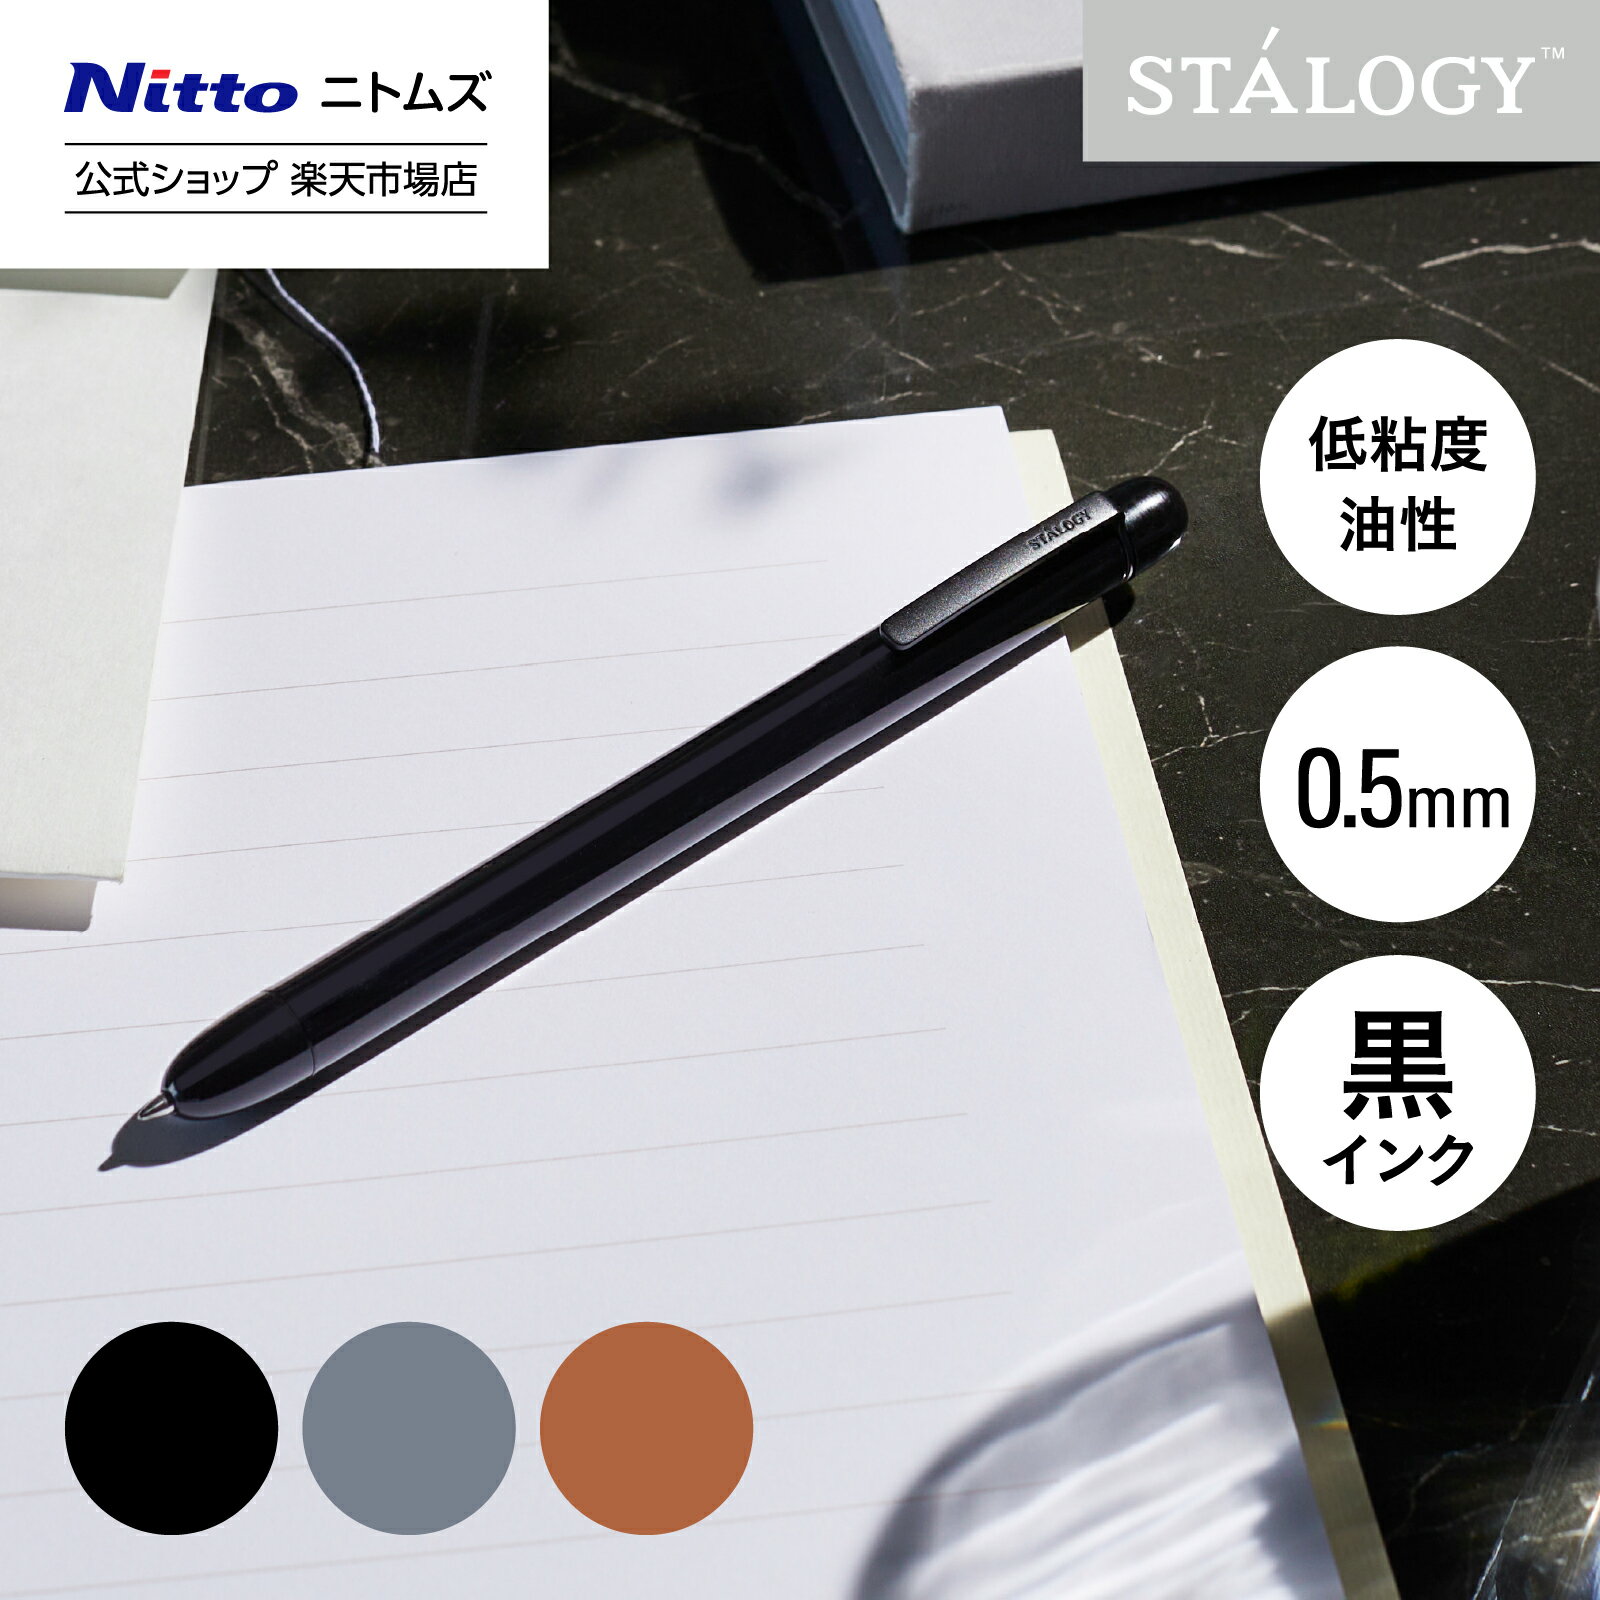 新商品 【公式】 ニトムズ STALOGY 低粘度油性ボールペン クラシック 0.5mm ブラッ...